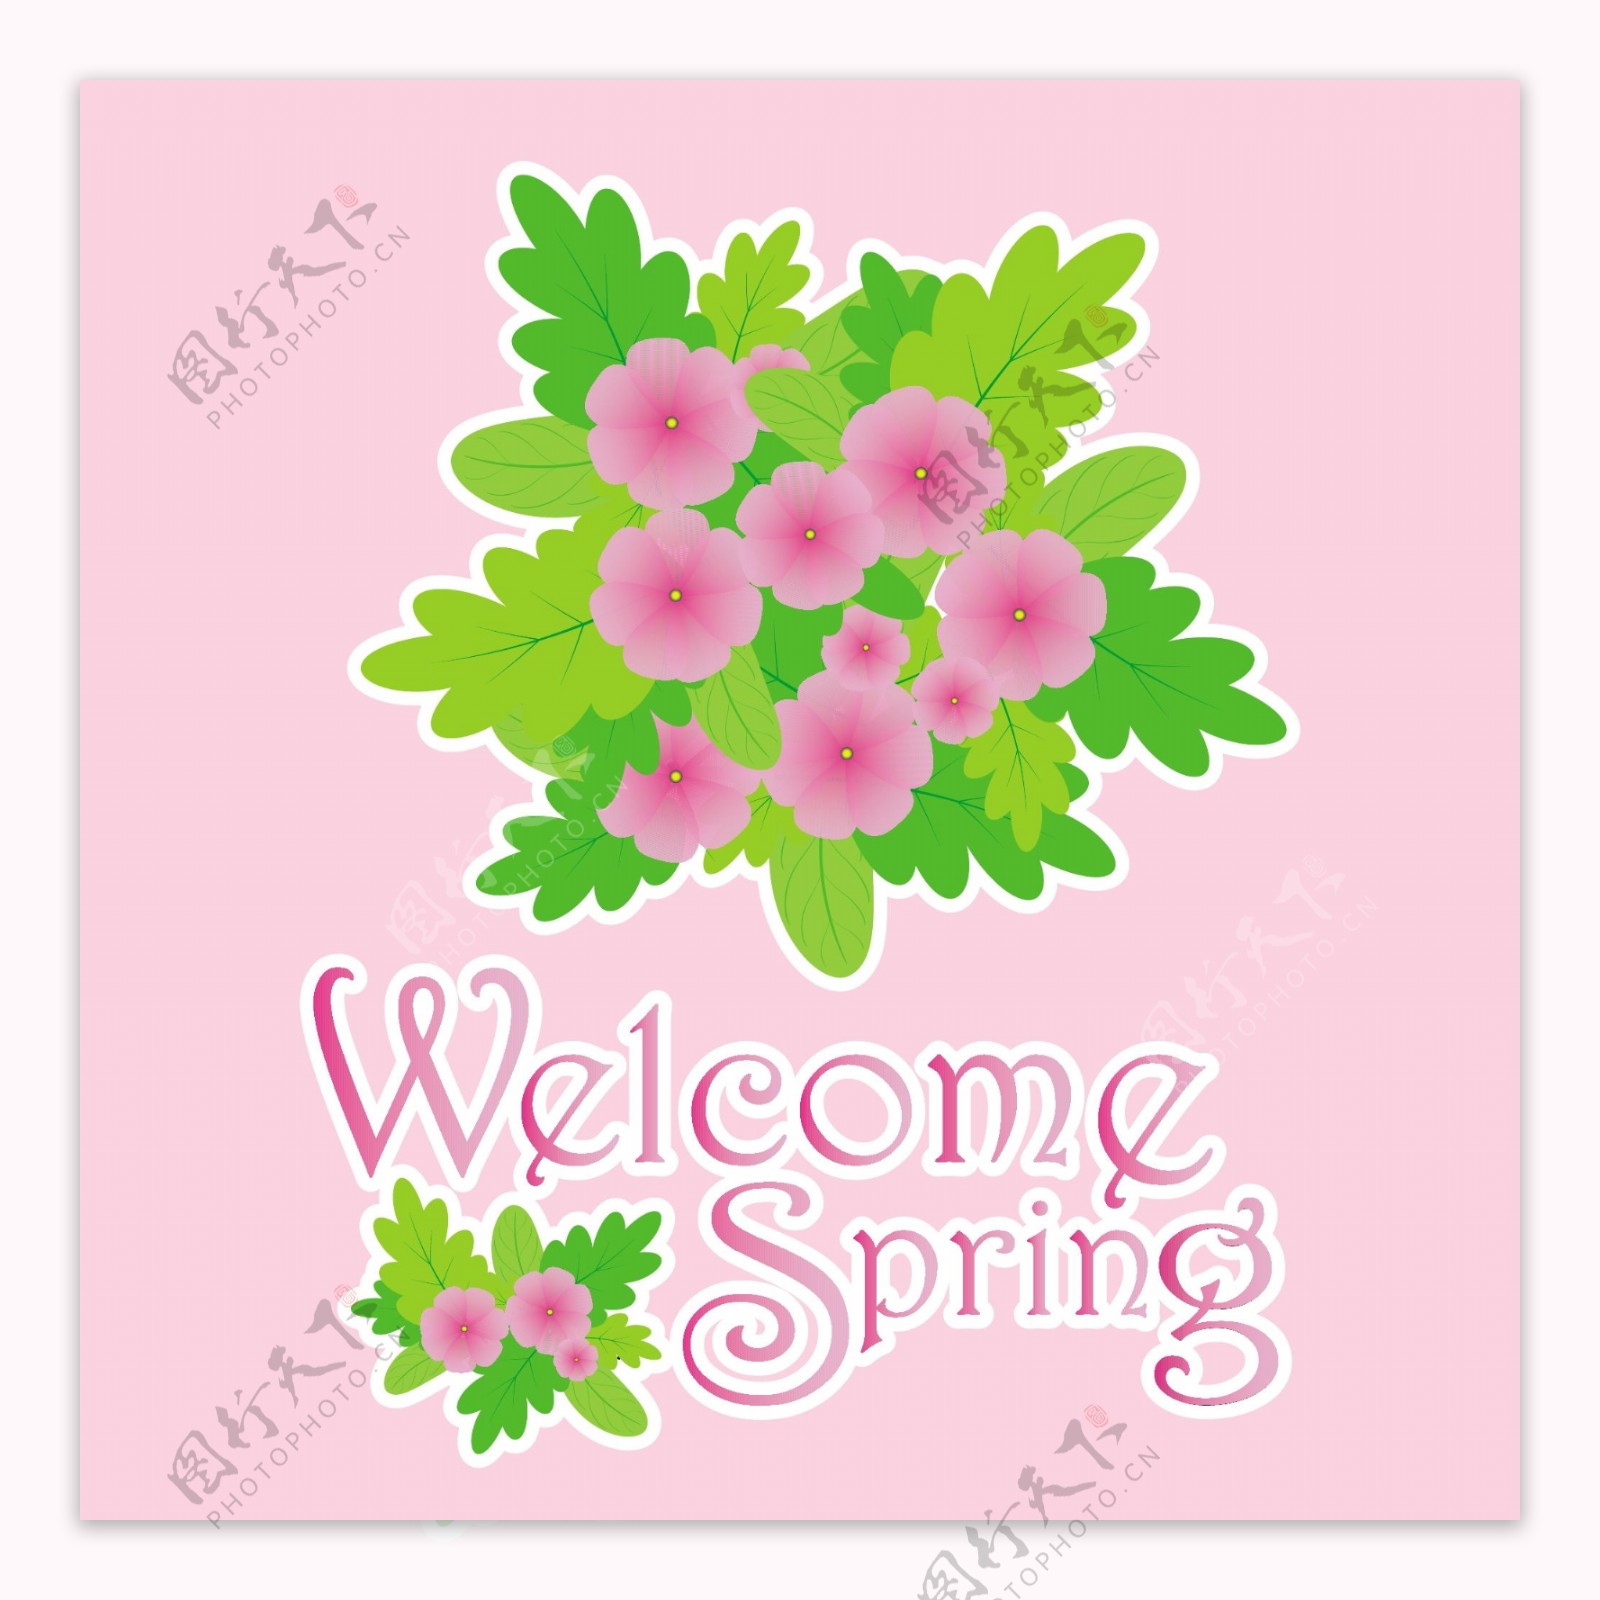 欢迎春天绿叶鲜花插画粉红色背景